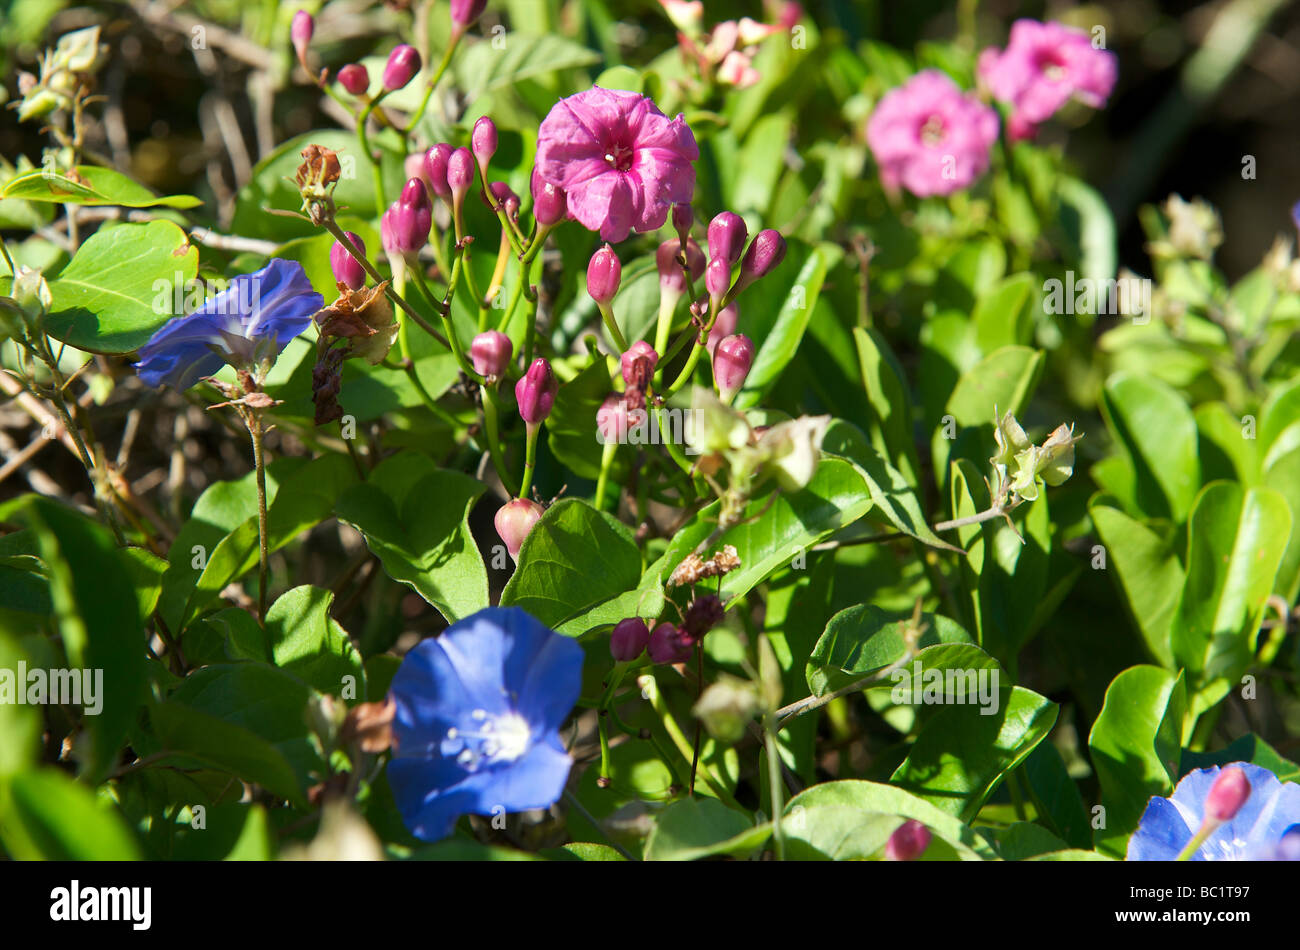 Sint Eustatius national flower morning glory Stock Photo - Alamy